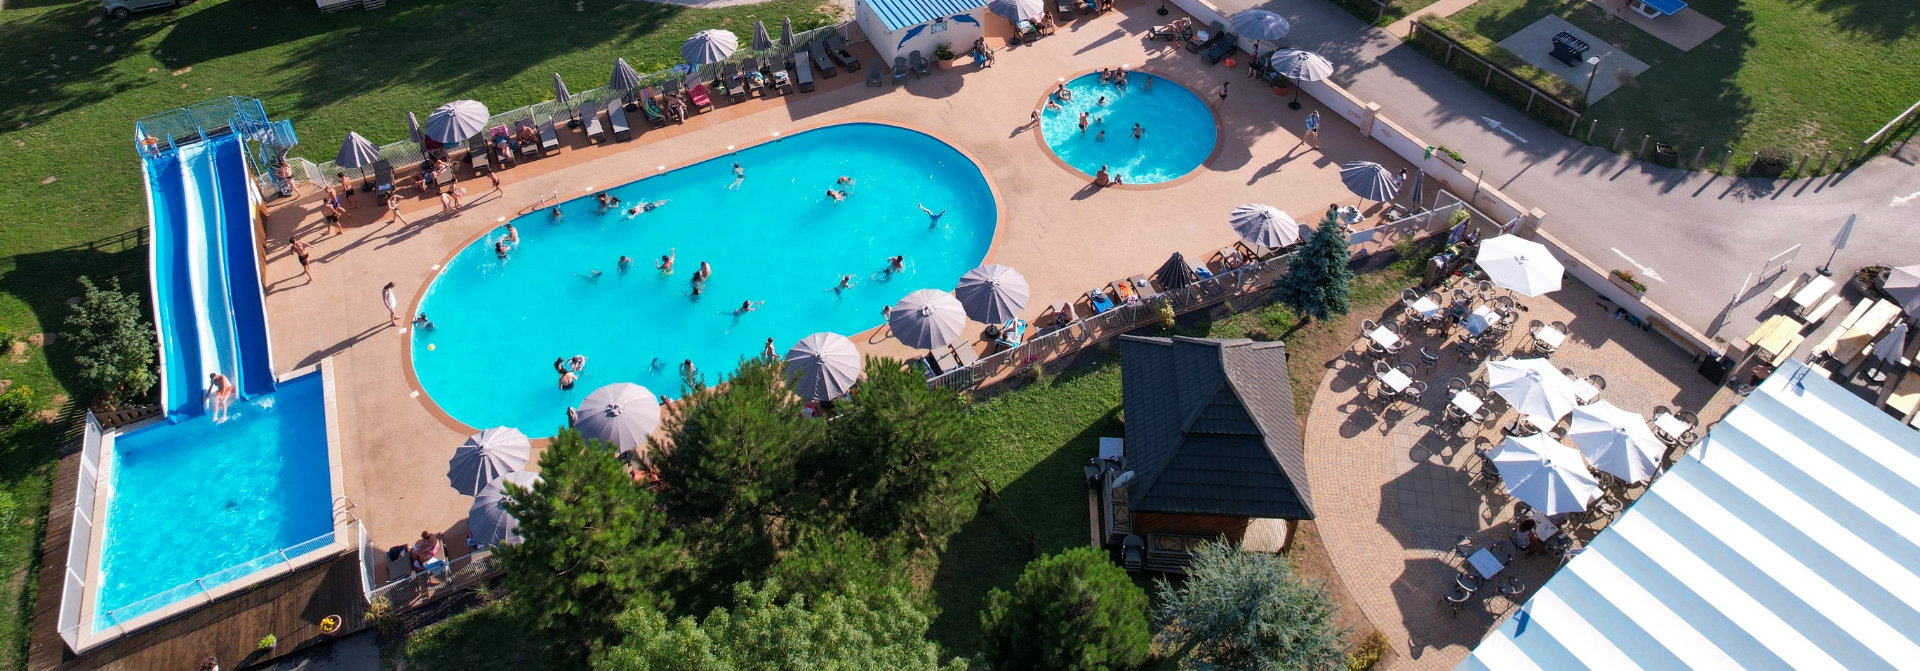 Vue aérienne de l’espace aquatique du camping les Bords de Loue, camping dans le Jura avec piscine